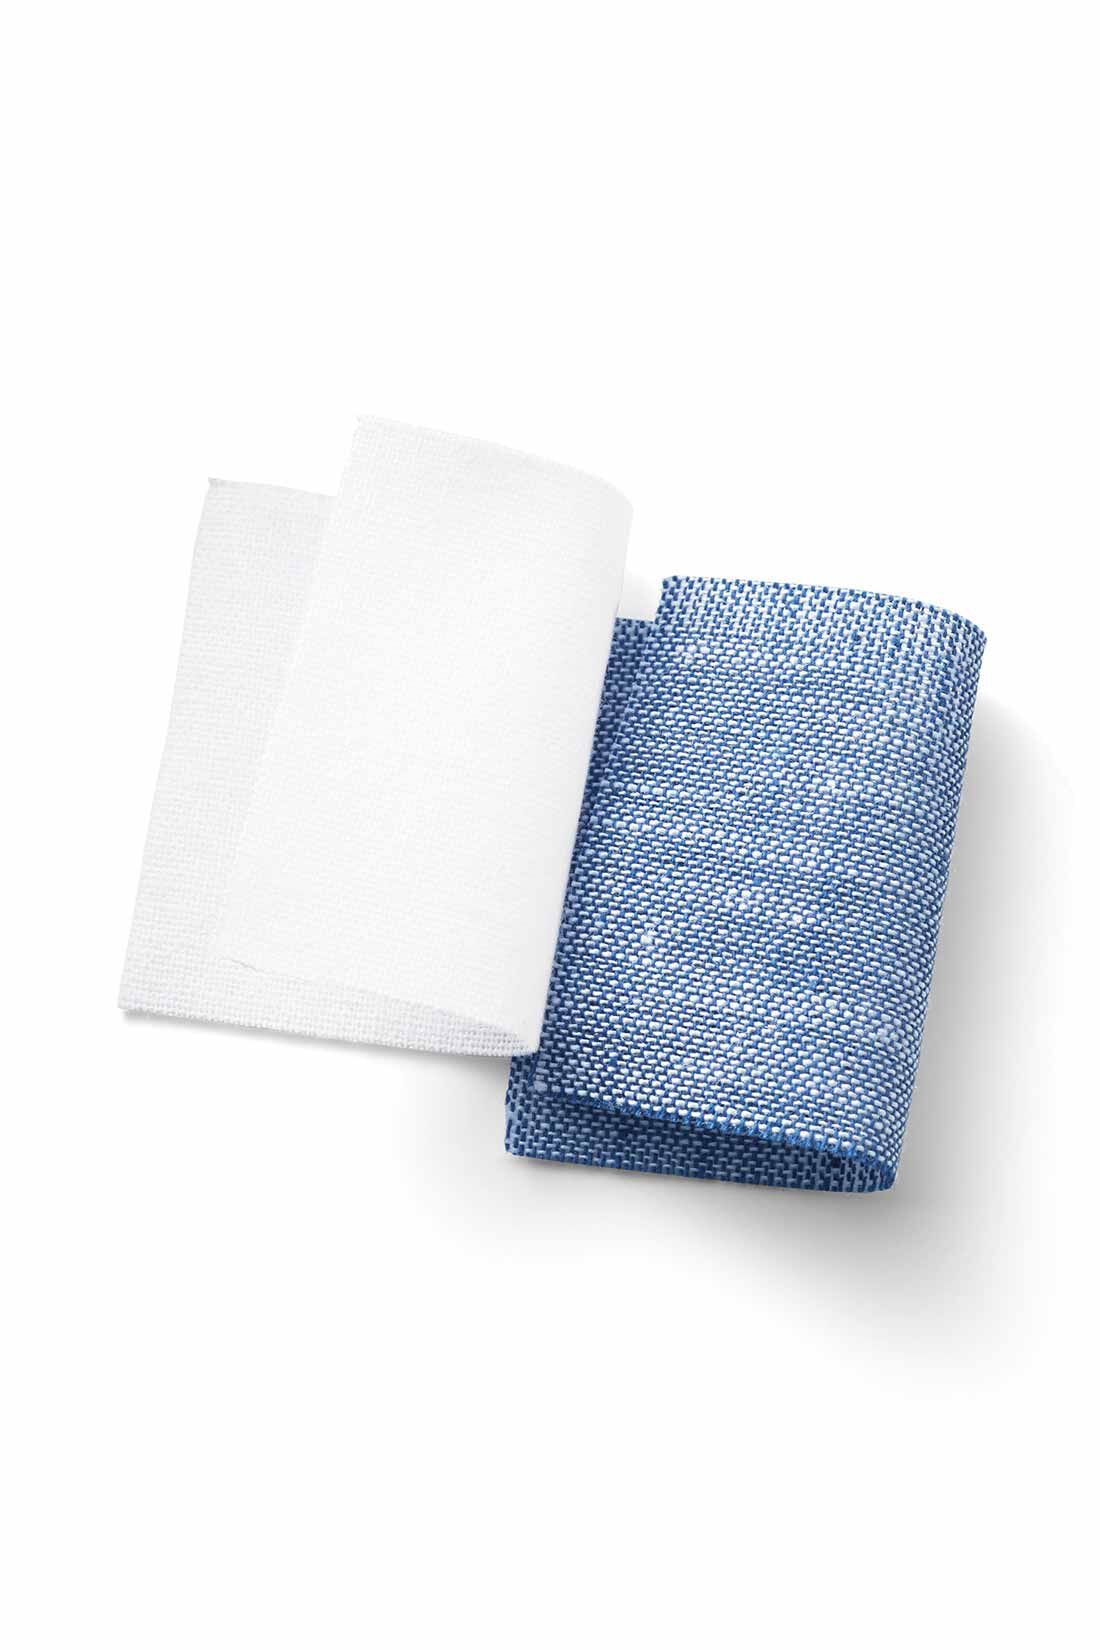 MEDE19F|MEDE19F　スクエアシルエットのデザインシャツ〈ブルー〉|綿麻の平織生地で、さらっと涼やかな肌ざわりでほのかな透け感があります。